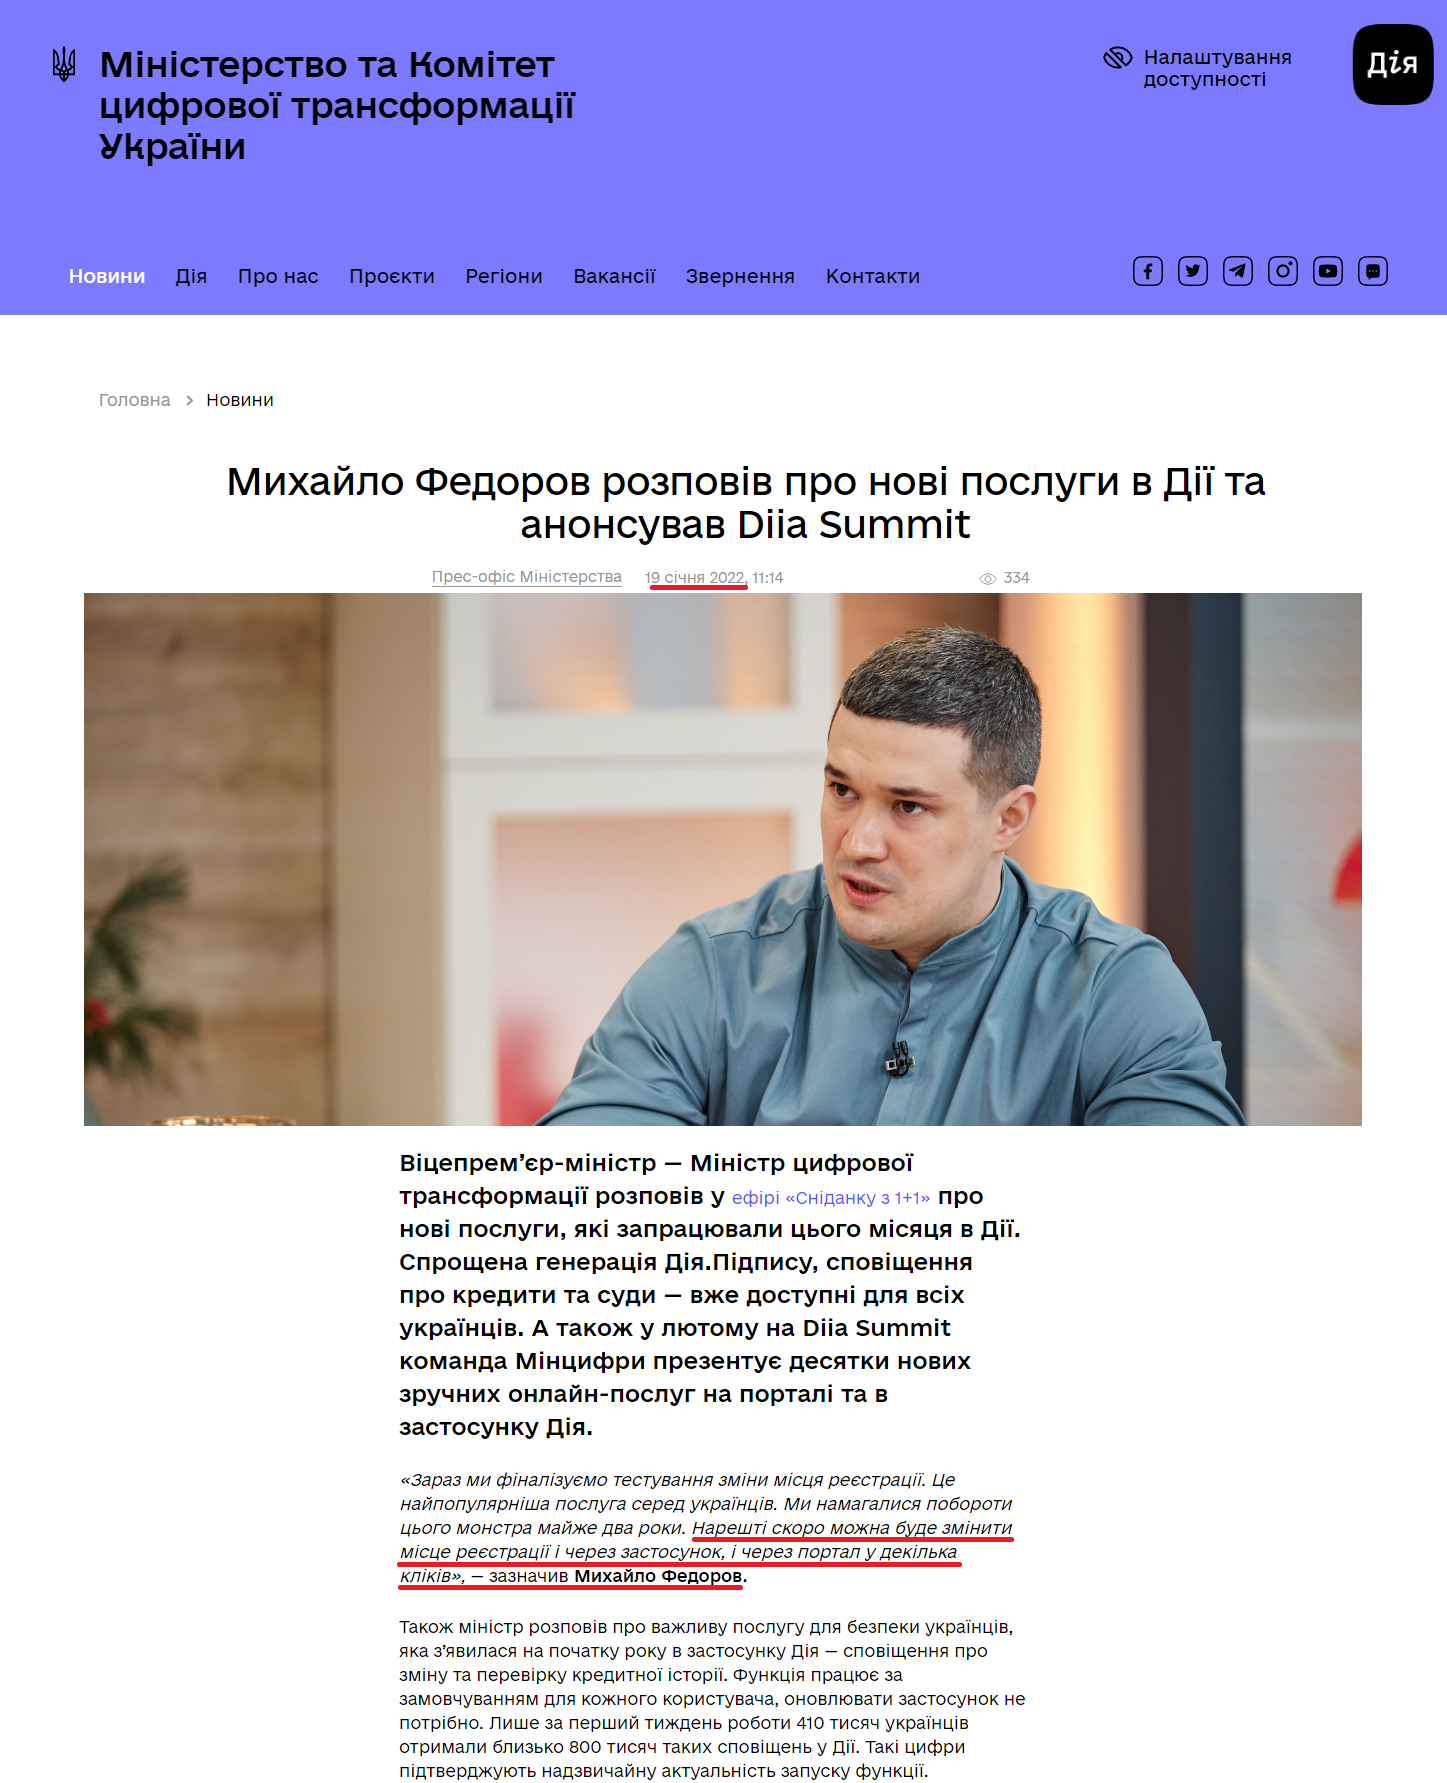 https://thedigital.gov.ua/news/mikhaylo-fedorov-rozpoviv-pro-novi-poslugi-v-dii-ta-anonsuvav-diia-summit